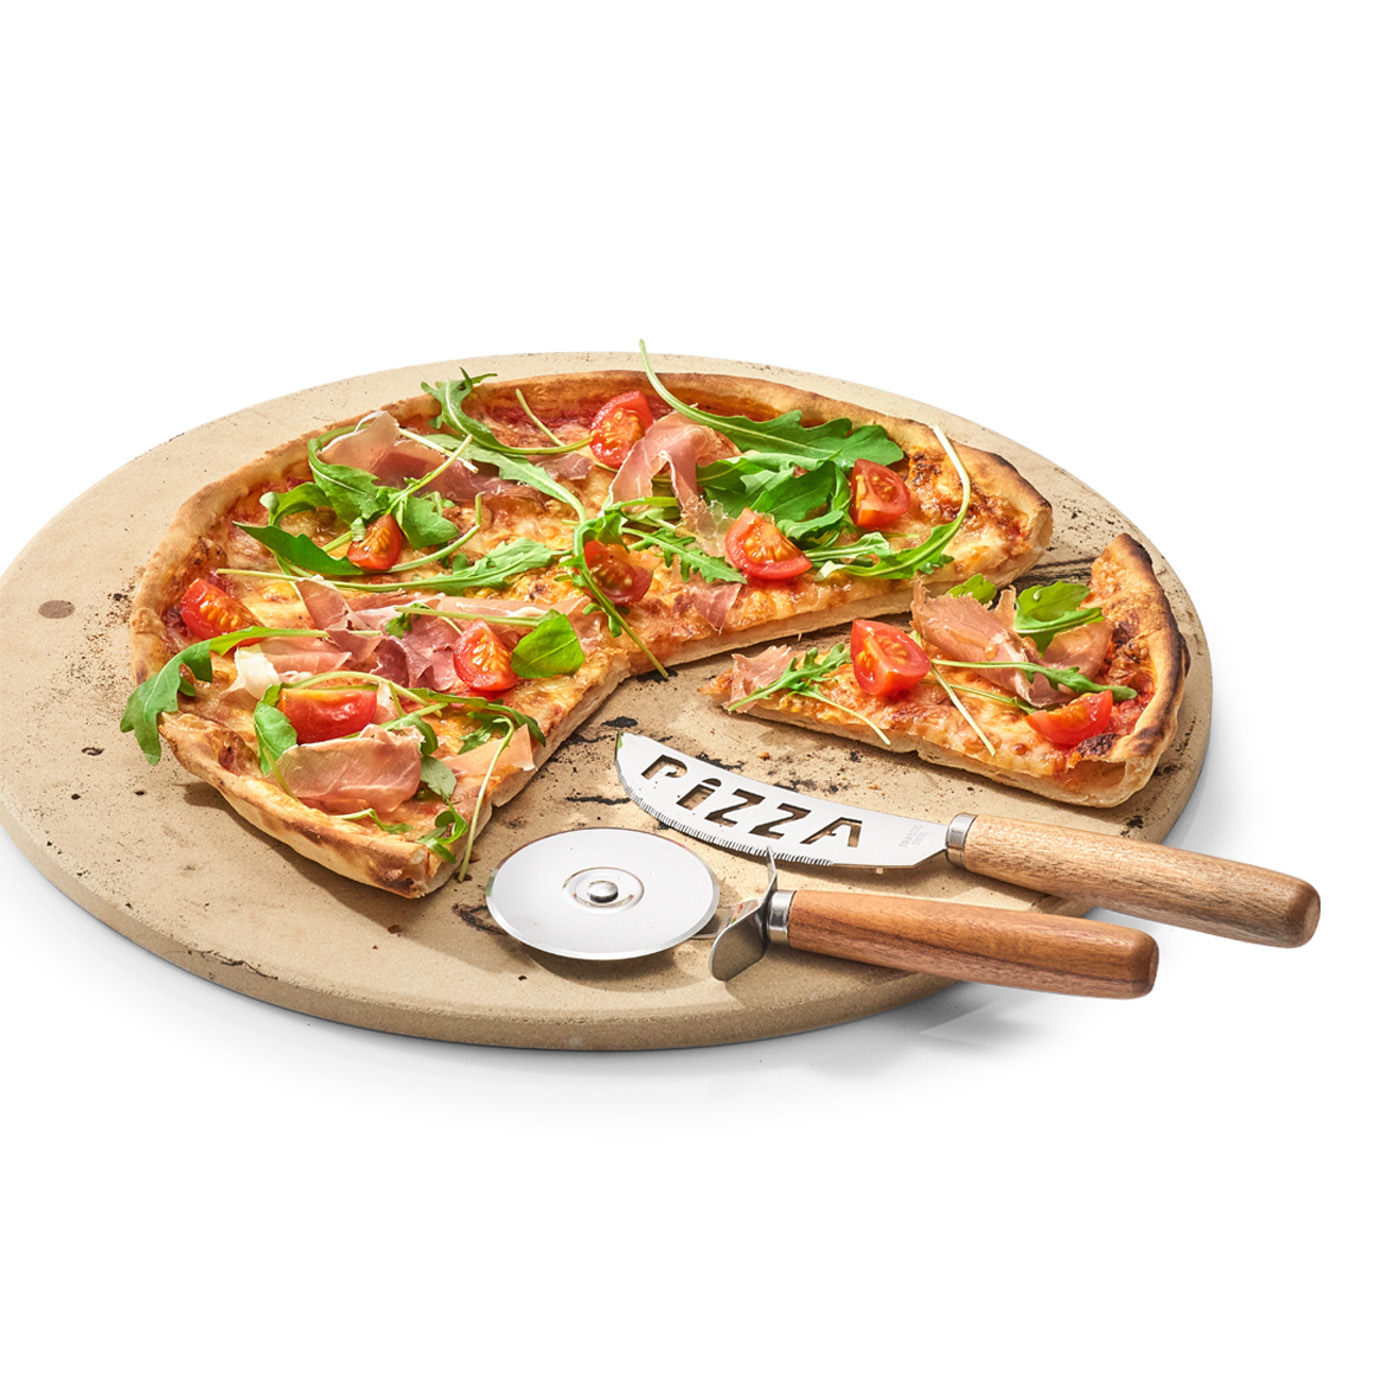 Pizza-Schneide-Set, Edelstahl 430; Edelstahl 420; Akazienholz, Farbe: silber. Servieren Sie Ihre Pizza stilvoll mit dem zweiteiligen